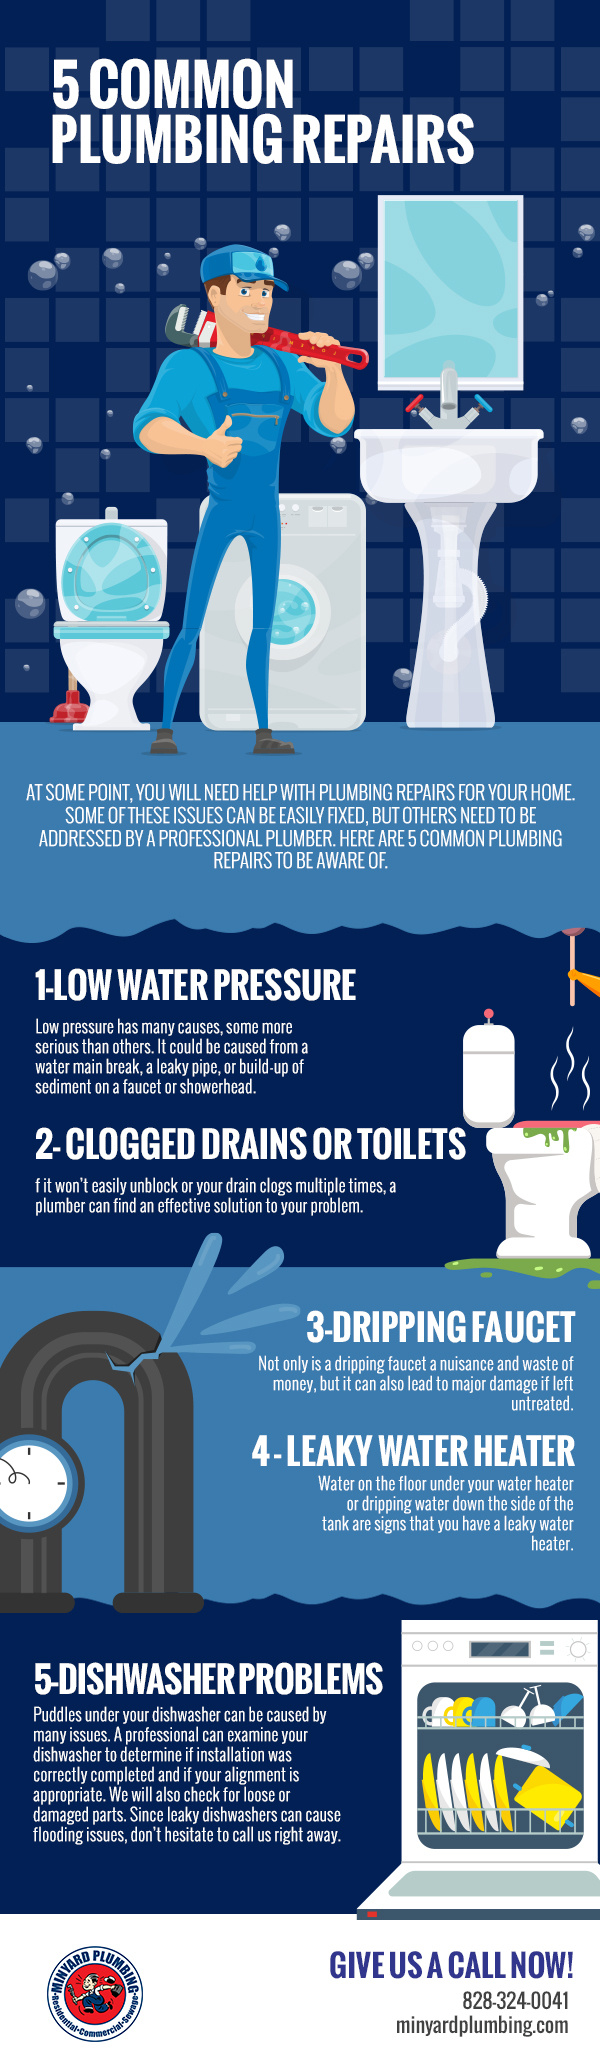 5 Common Plumbing Repairs [infographic]